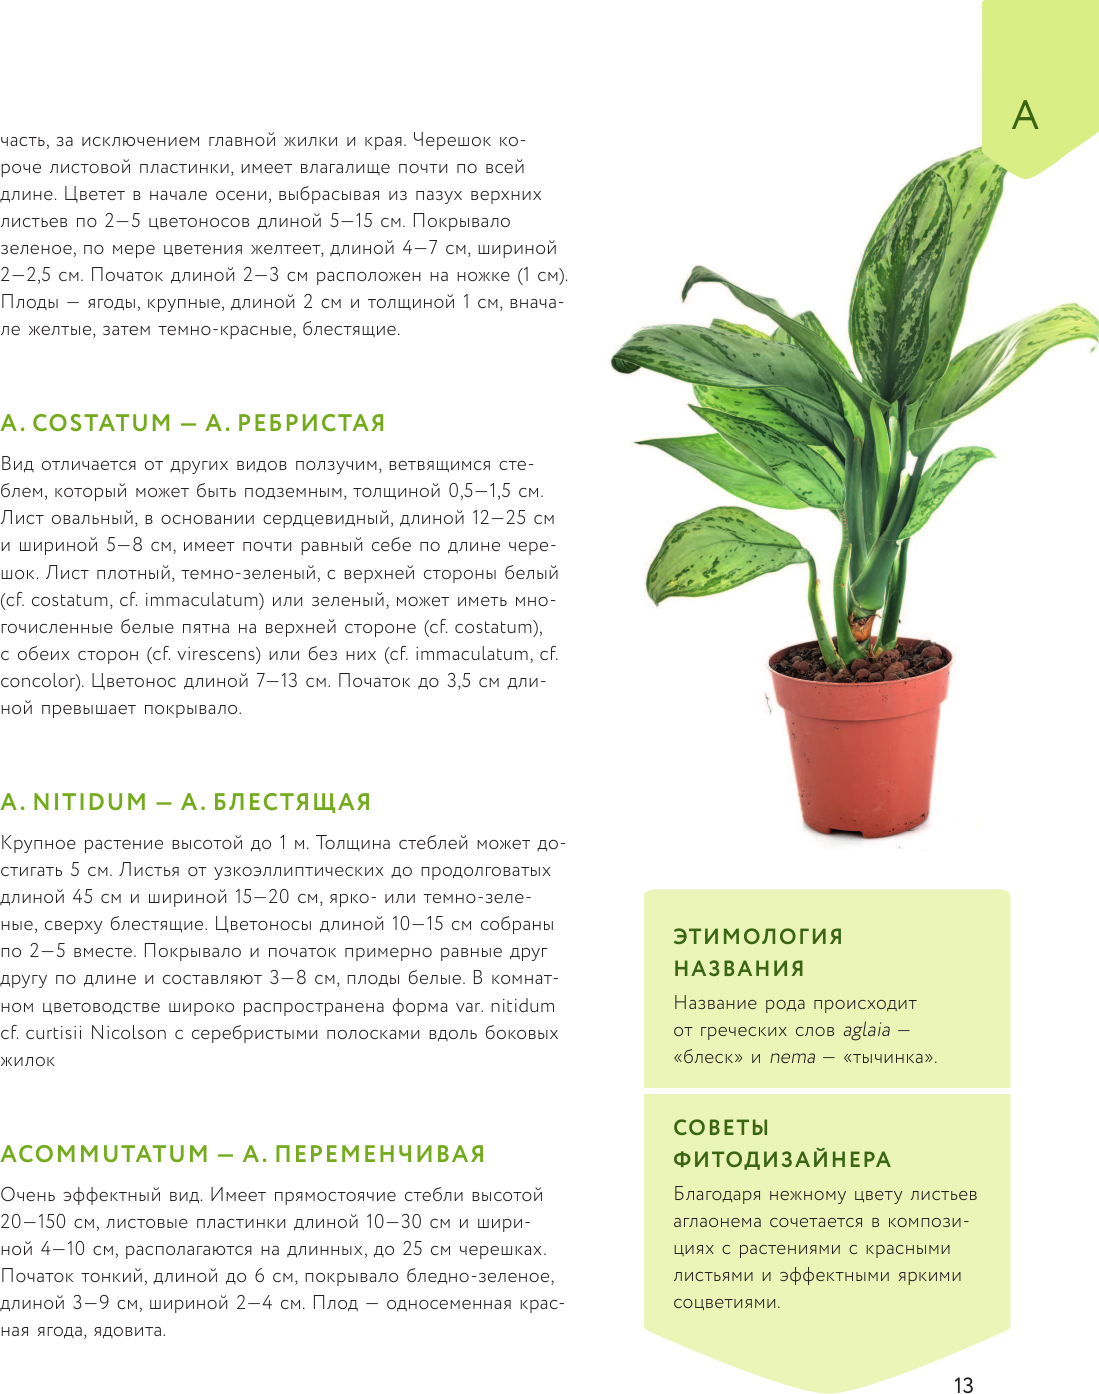 Зеленый оазис. Комнатные растения от А до Я - фото №14